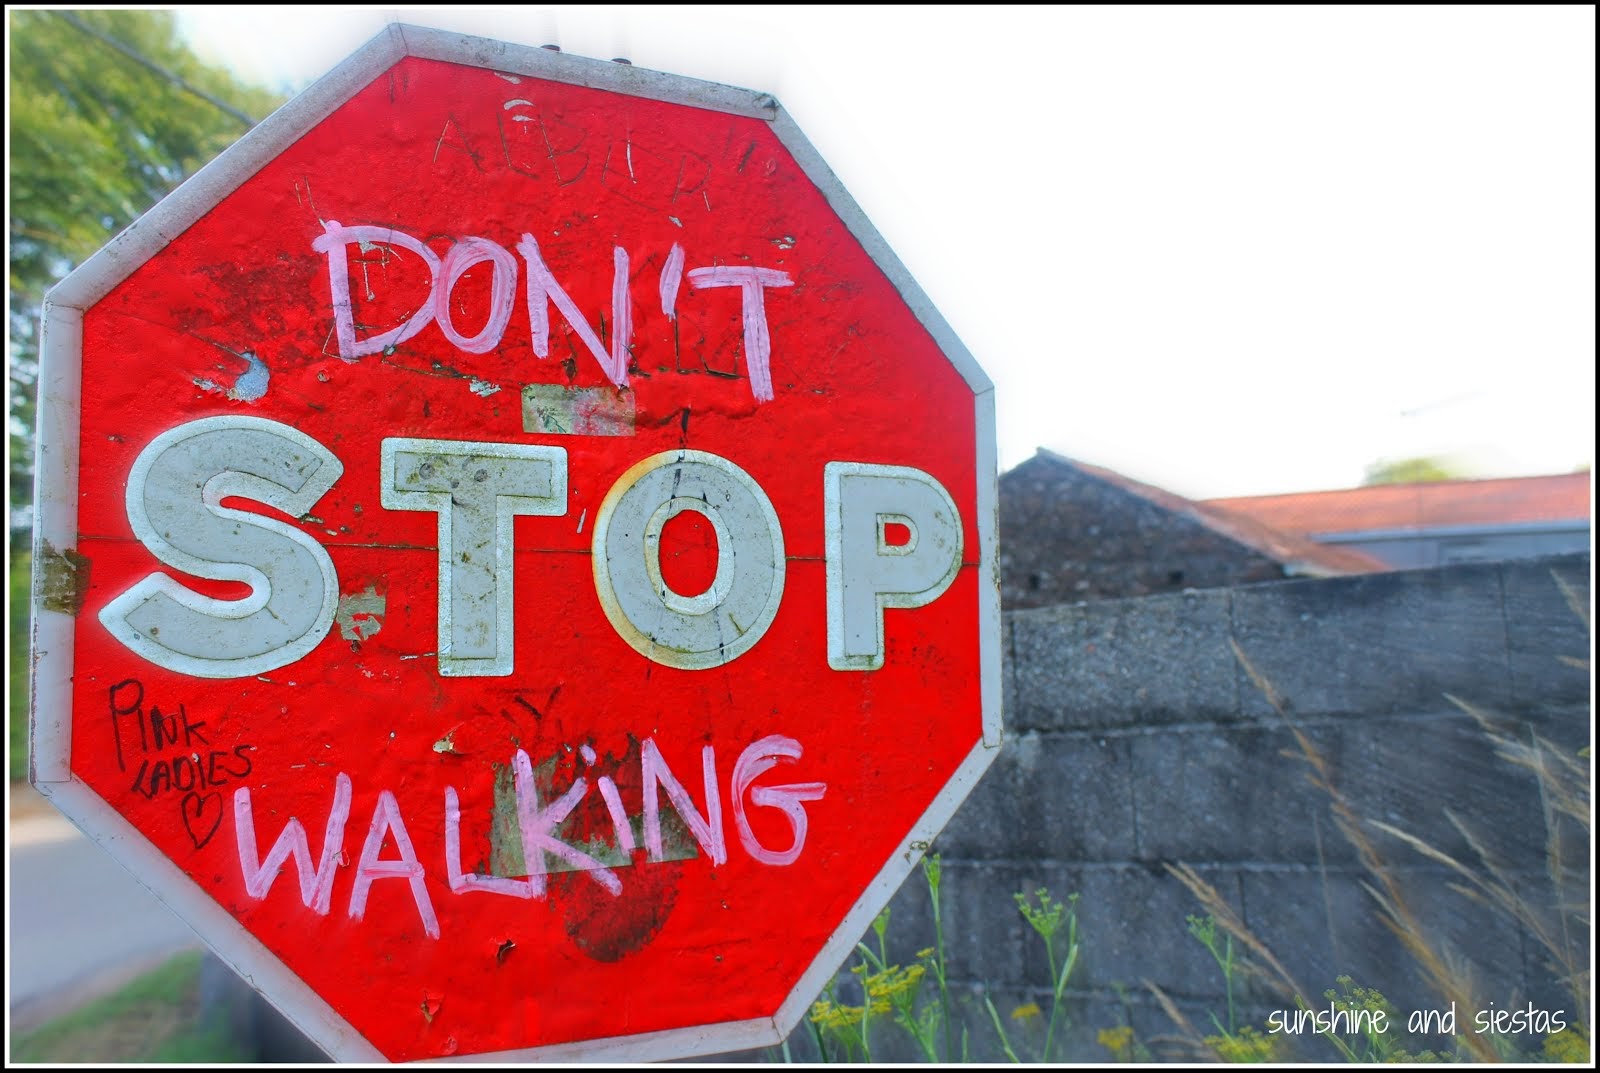 Don't stop walking